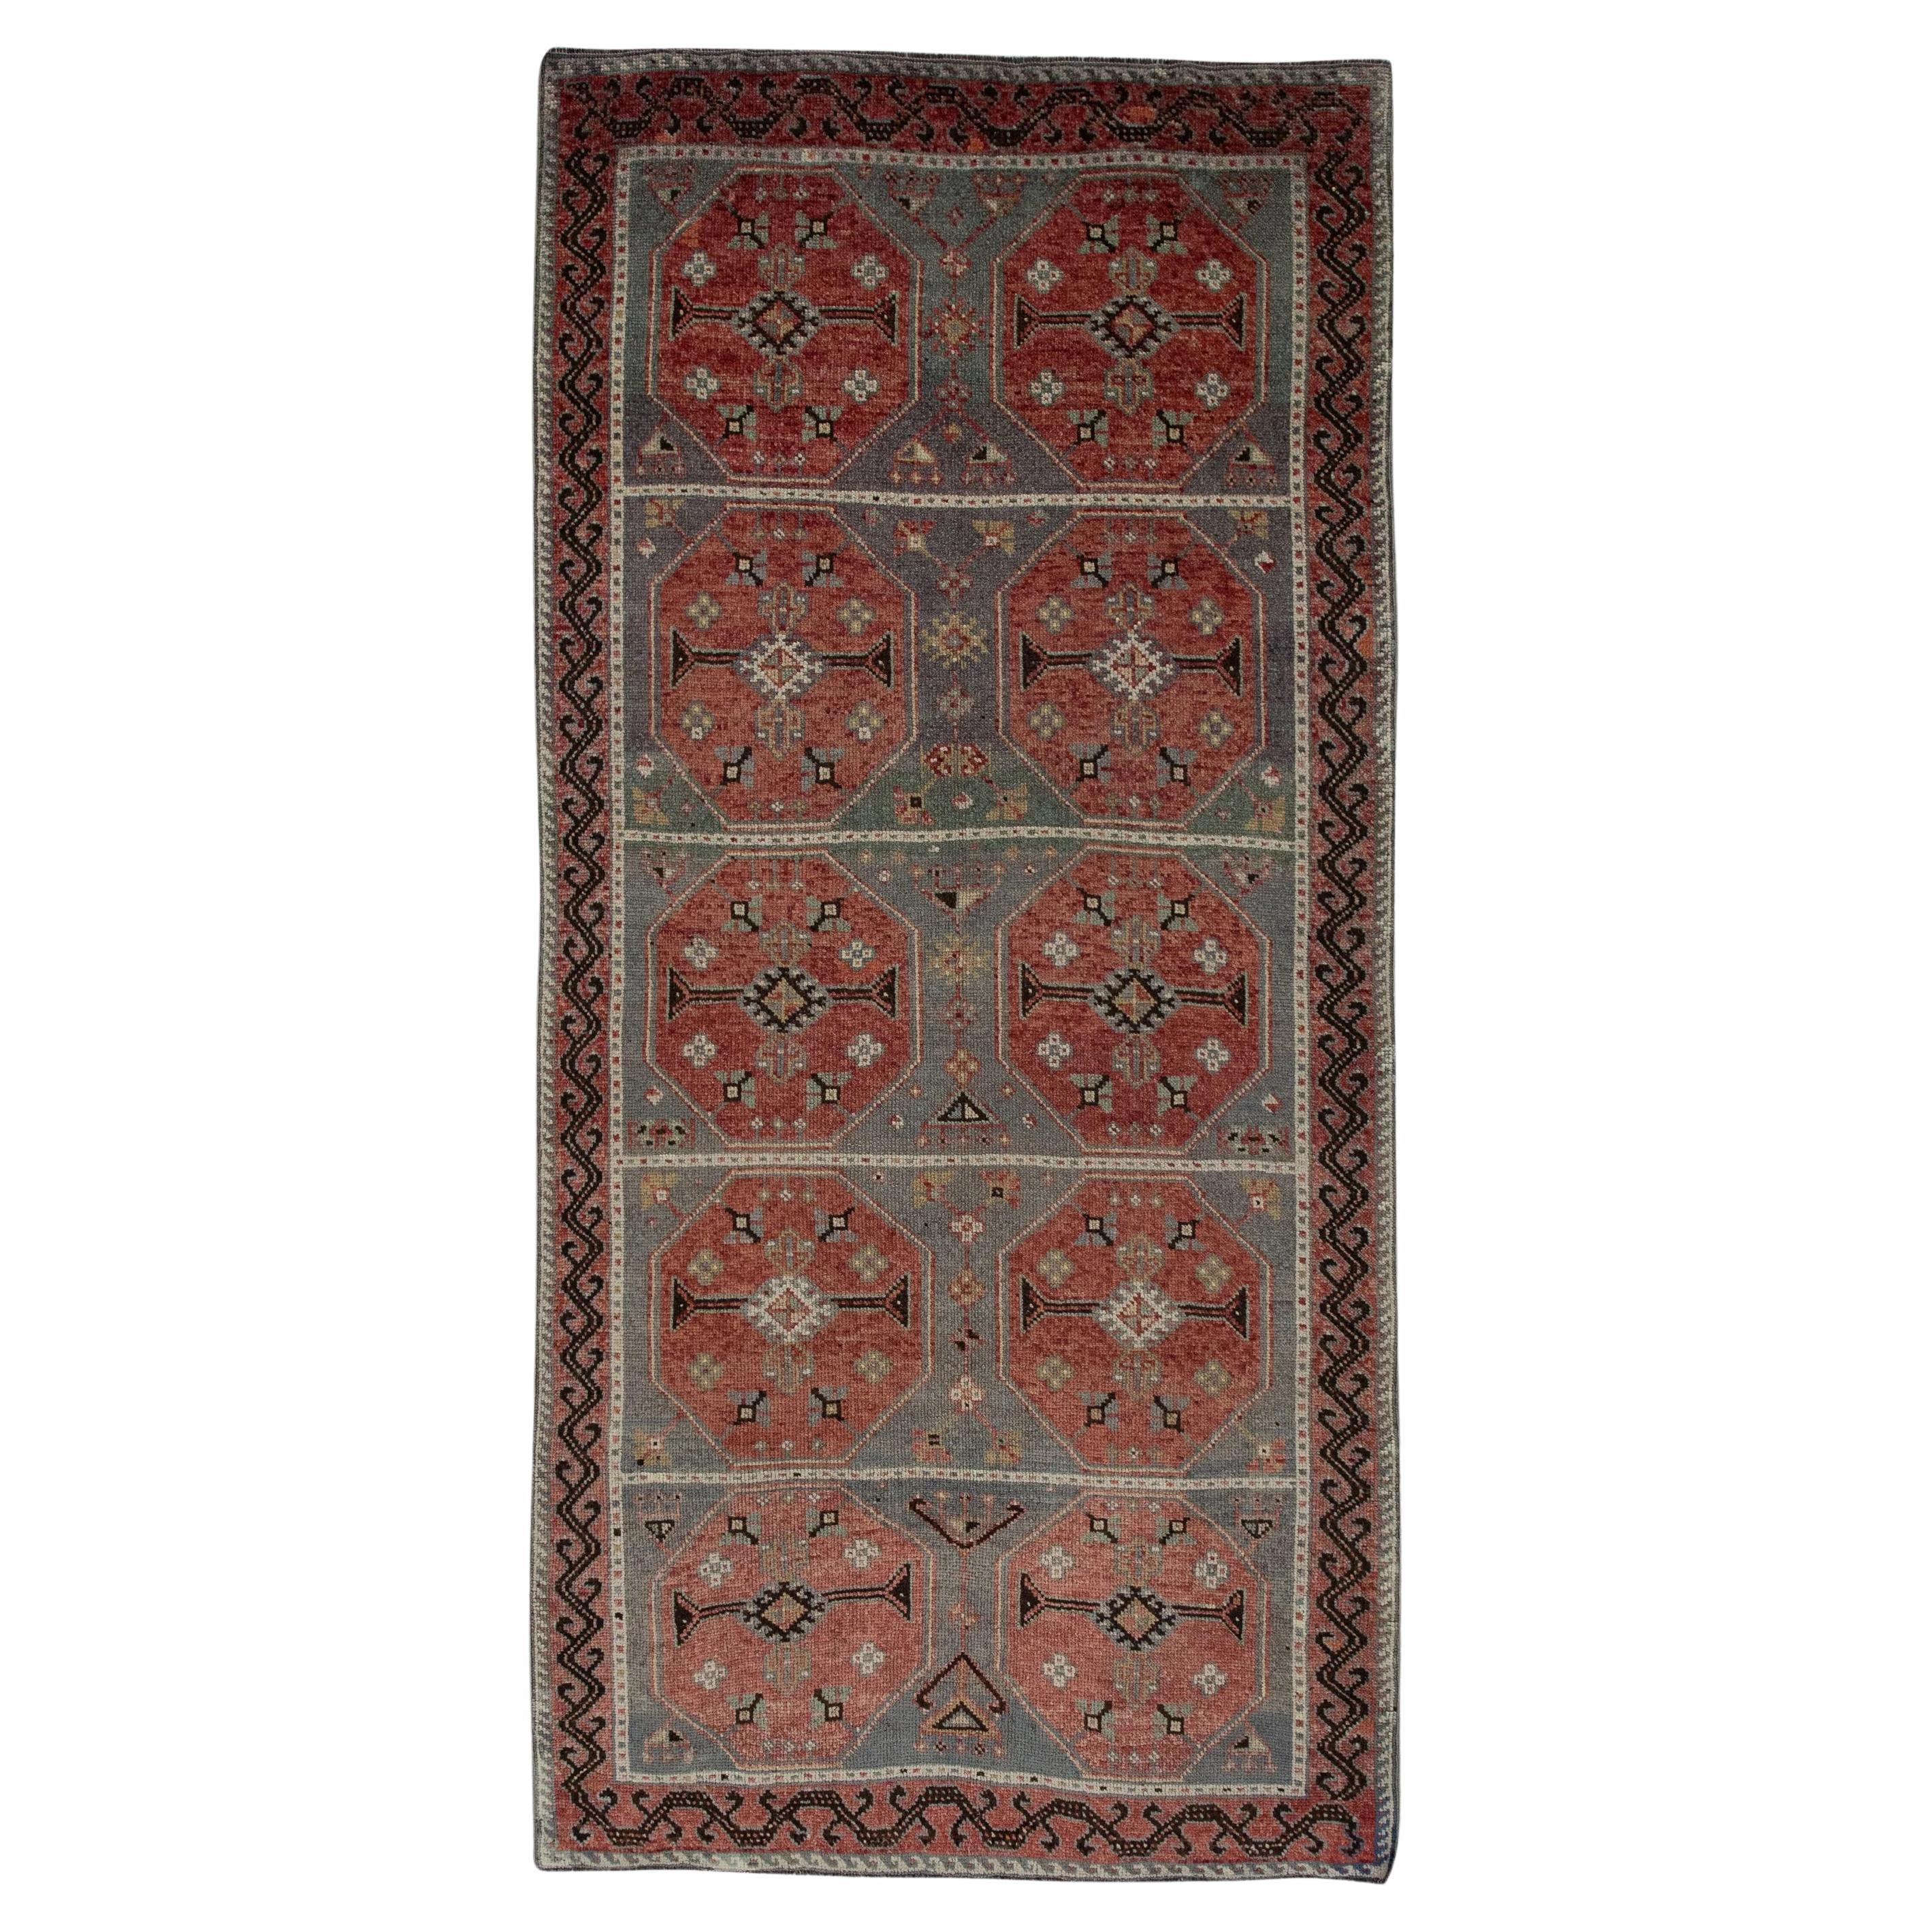 1960er Jahre Rot Multicolor Vintage Türkischer Teppich 4'1" x 8'